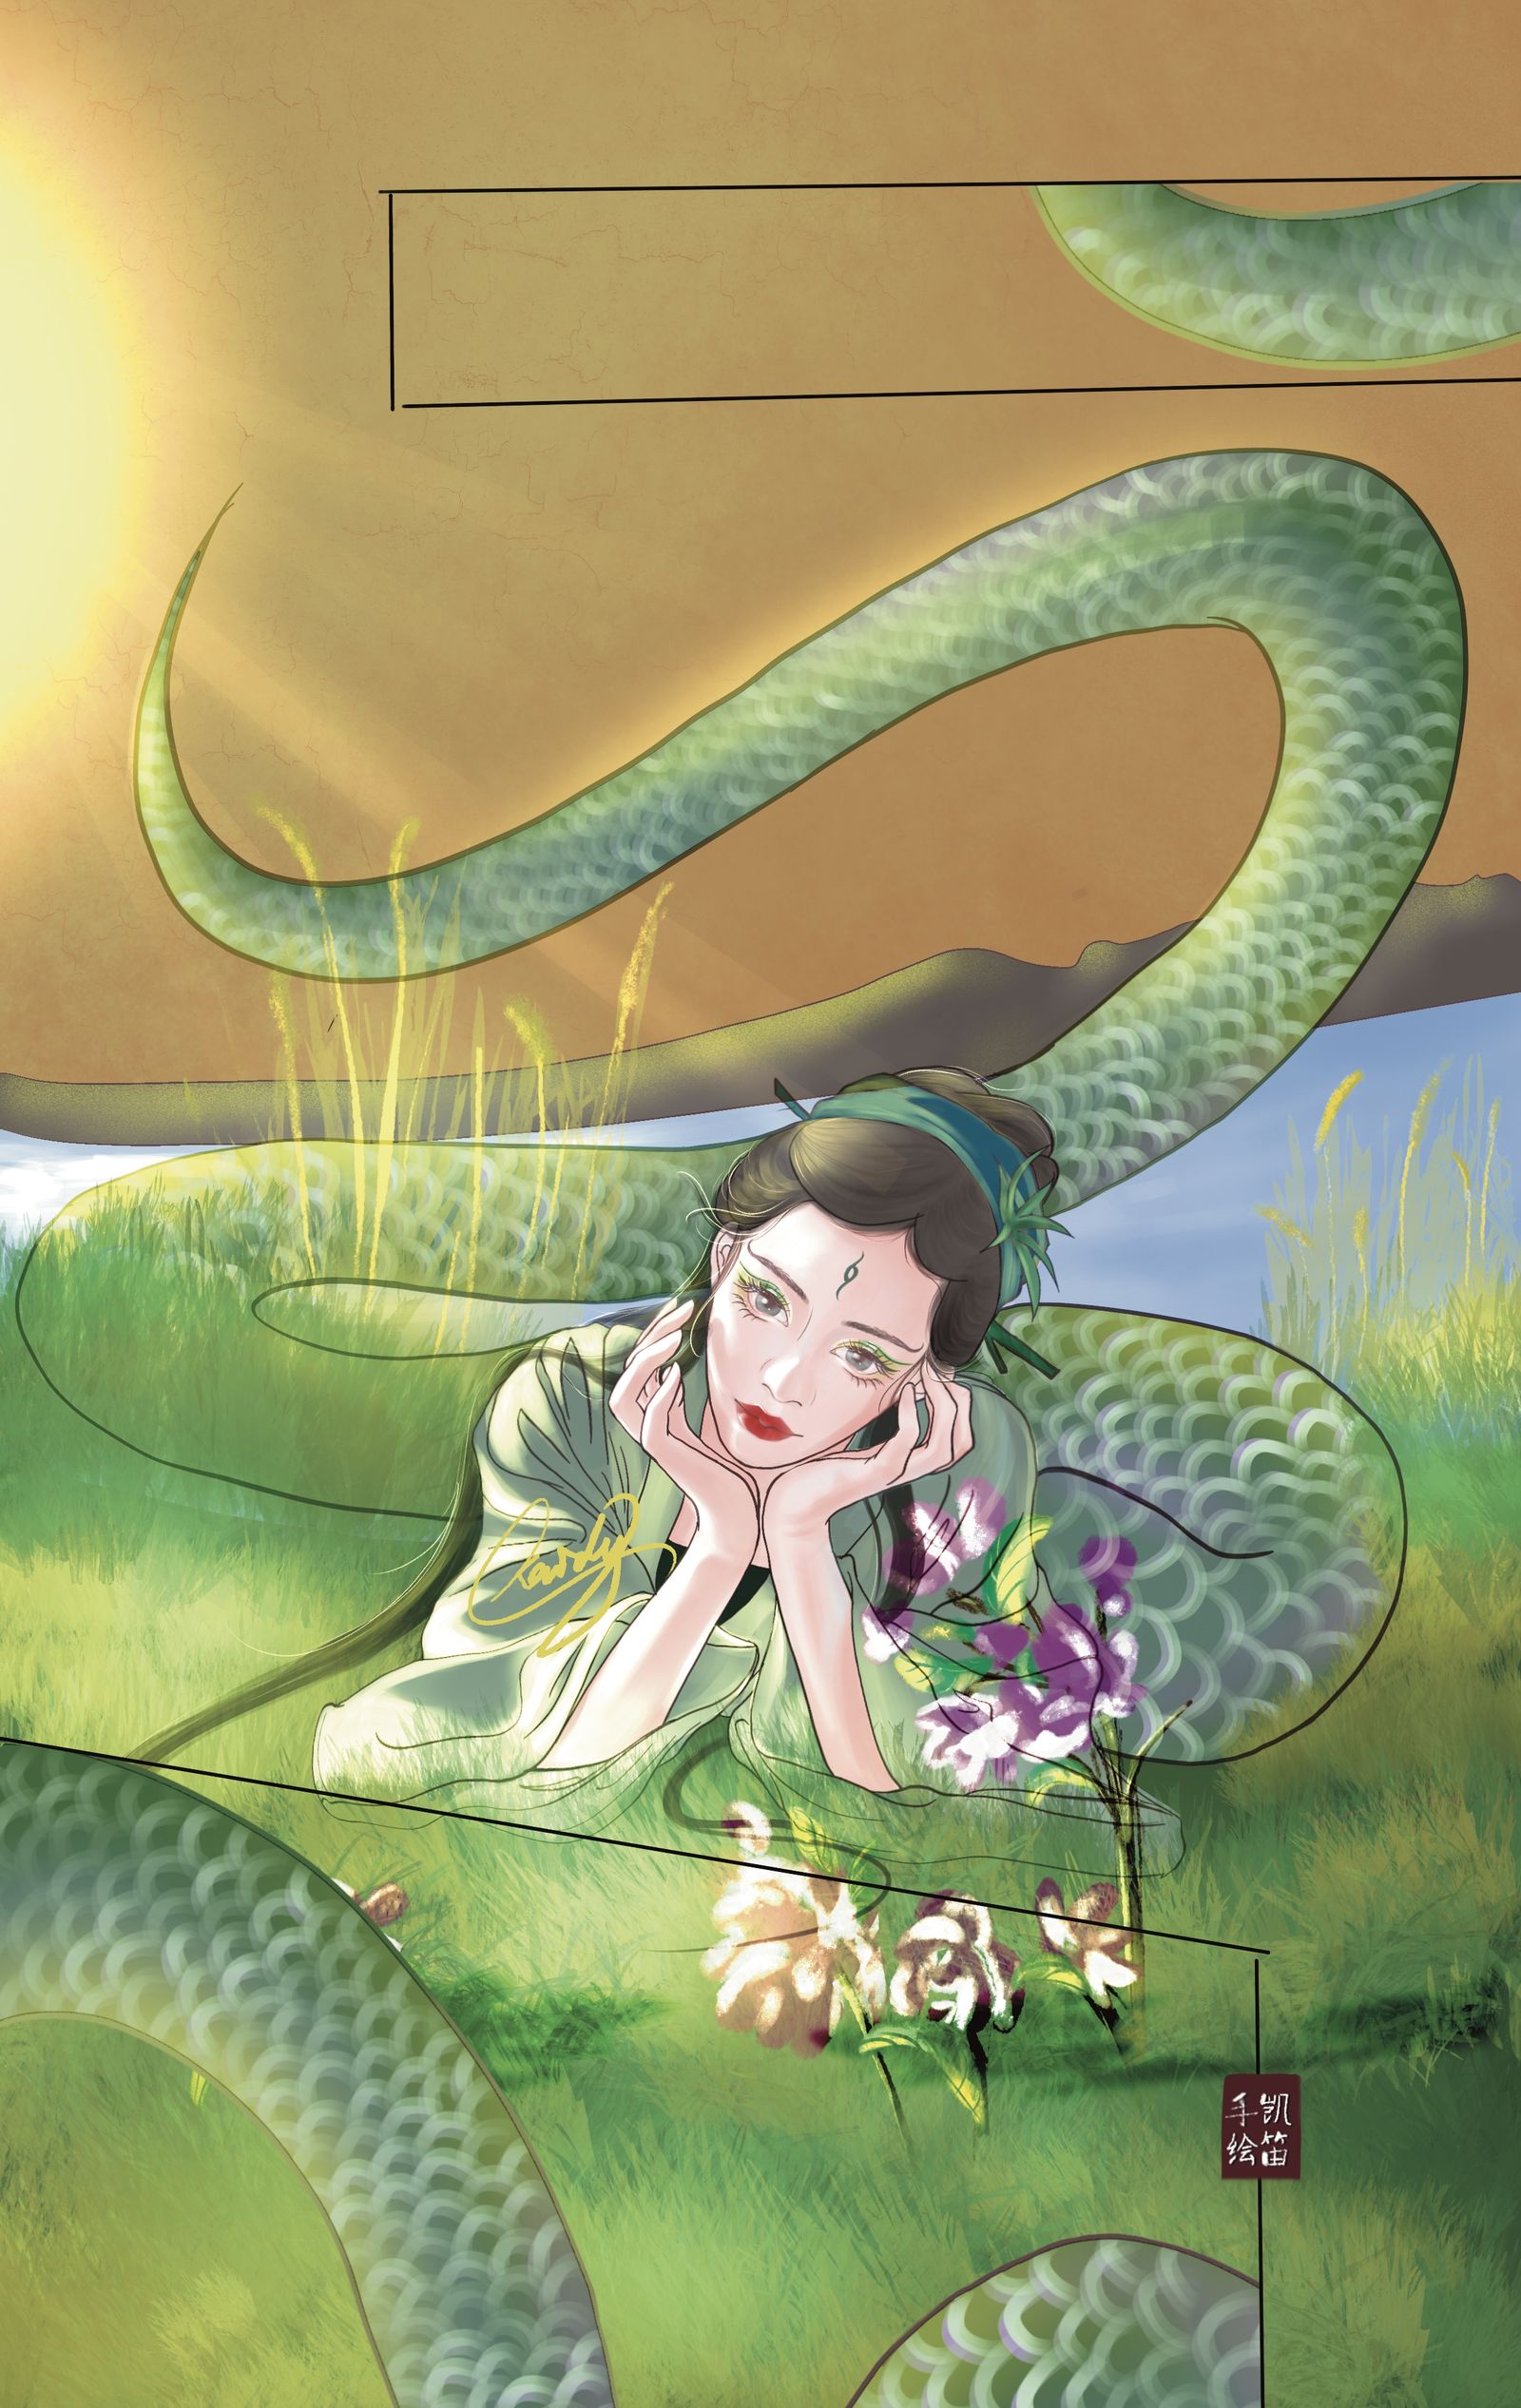 蛇蛇晒太阳插画图片壁纸